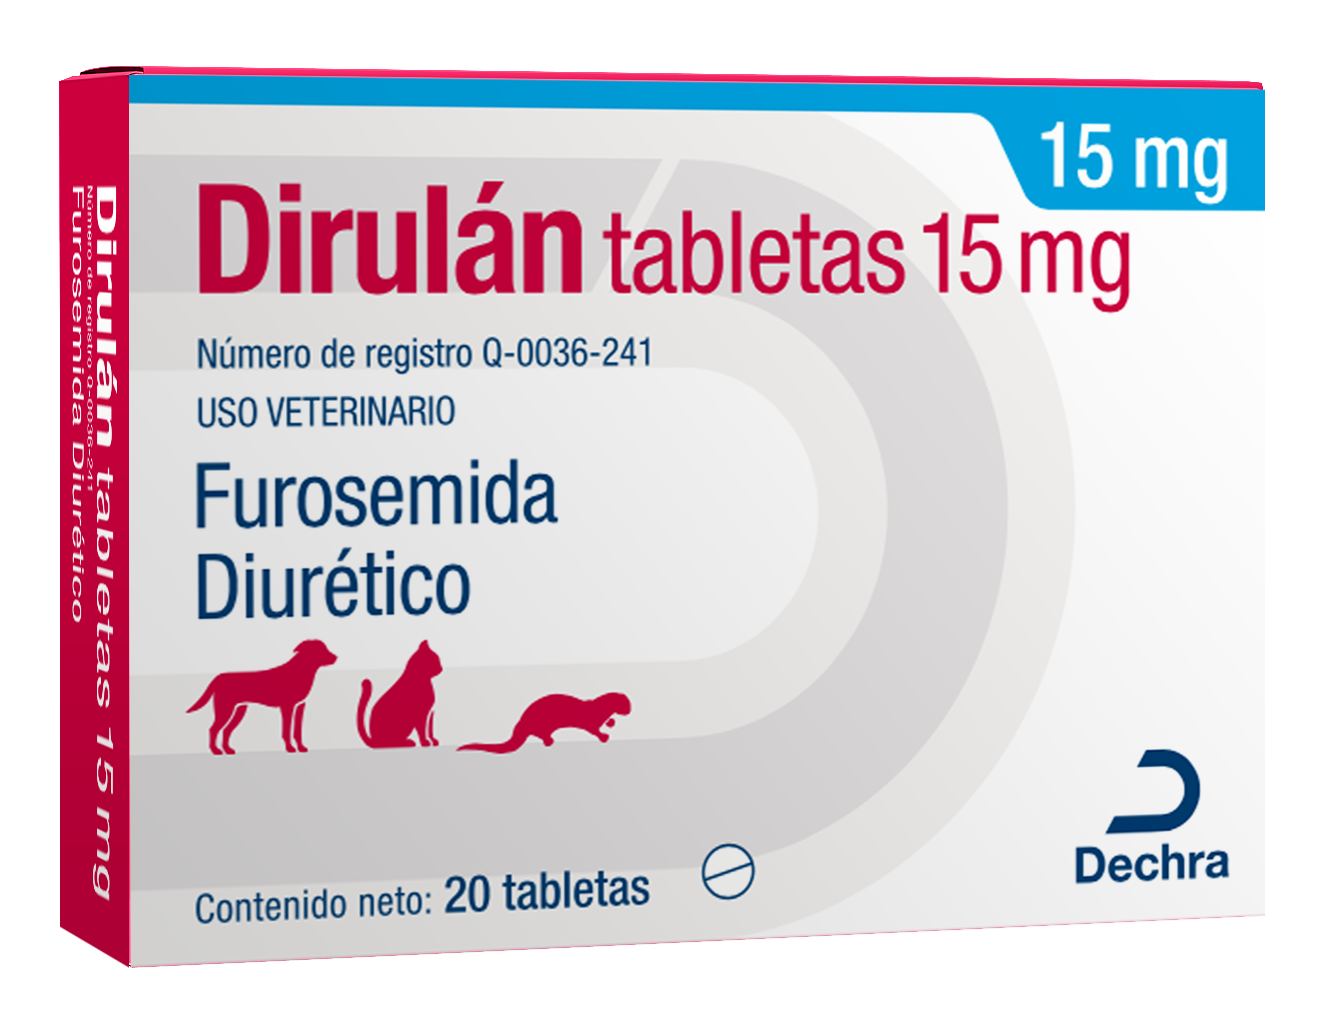 Dirulan 15mg Caja 20 Tabletas (requiere receta medica veterinaria vigente)